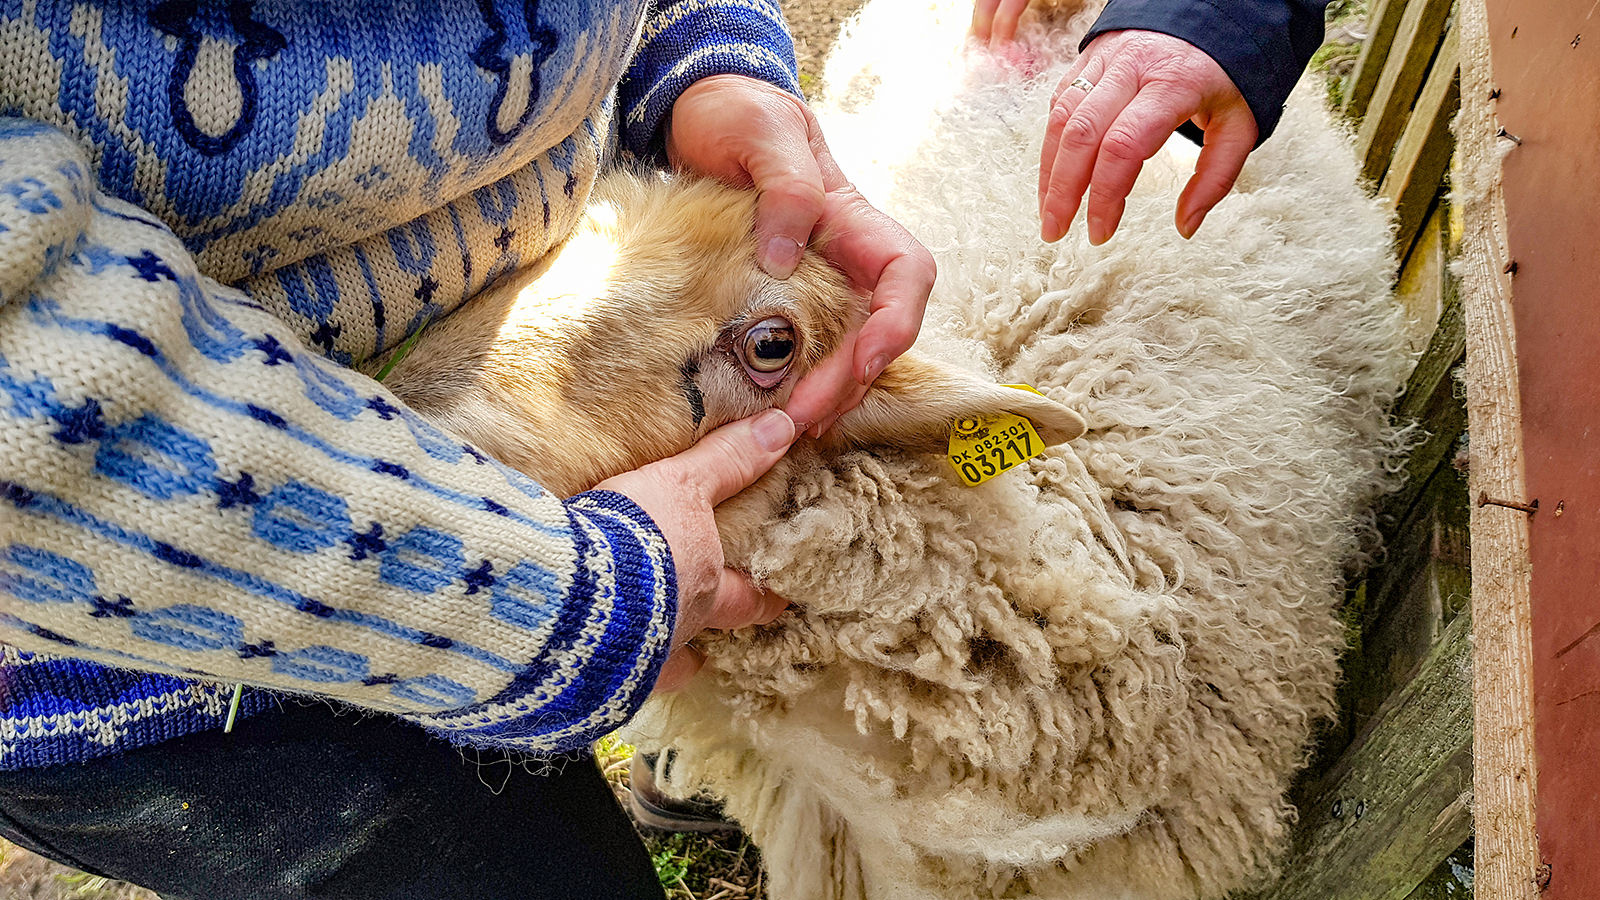 Randi Worm viser, hvor blege slimhinderne i fårets øje er. Blege slimhinder er tegn på blodmangel, og blodmangel er igen tegn på angreb med leverikter